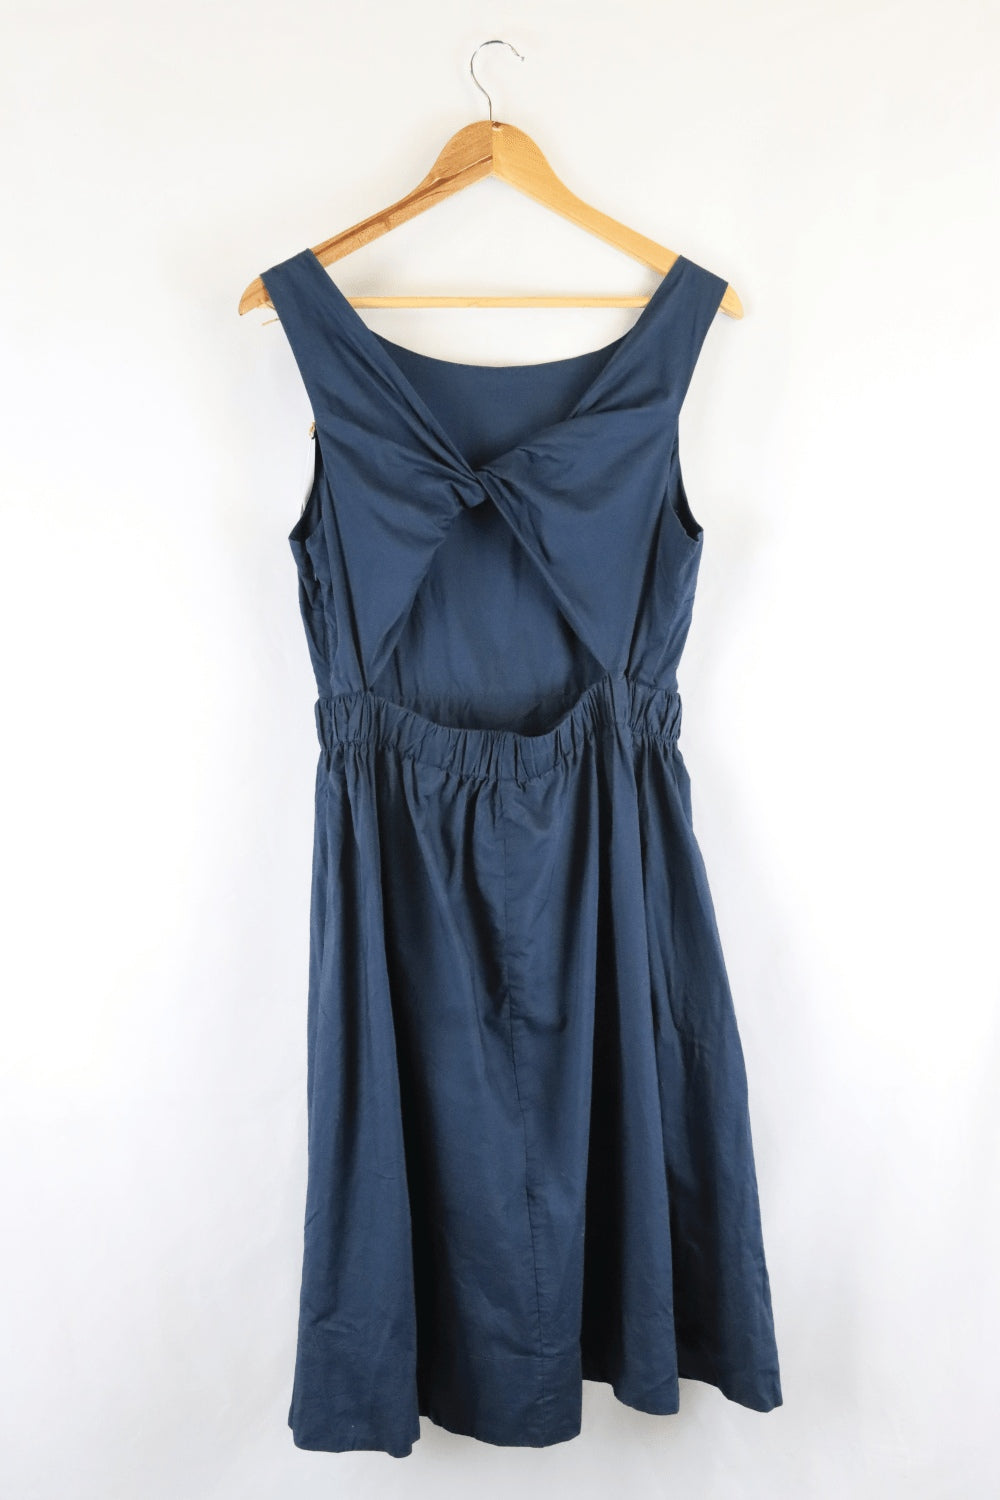 Gorman Blue Dress 12